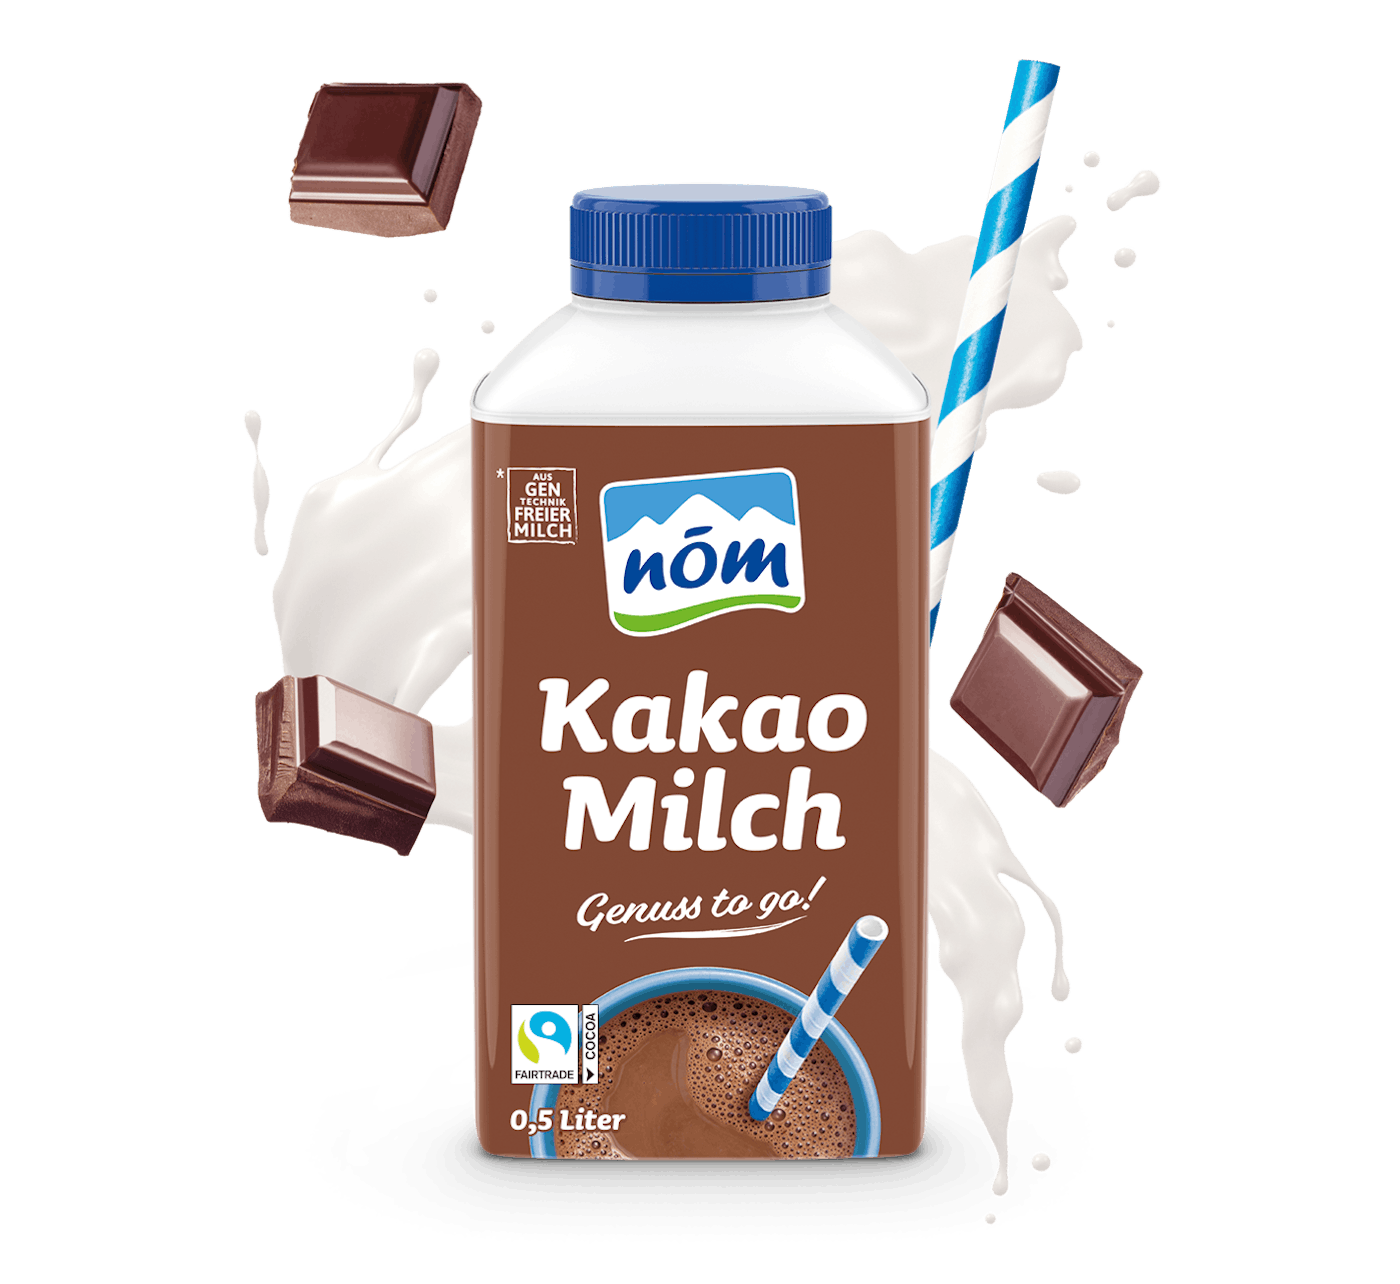 NÖM Kakaomilch 0,5 Liter im Tetra Pak mit Schokoladestückchen